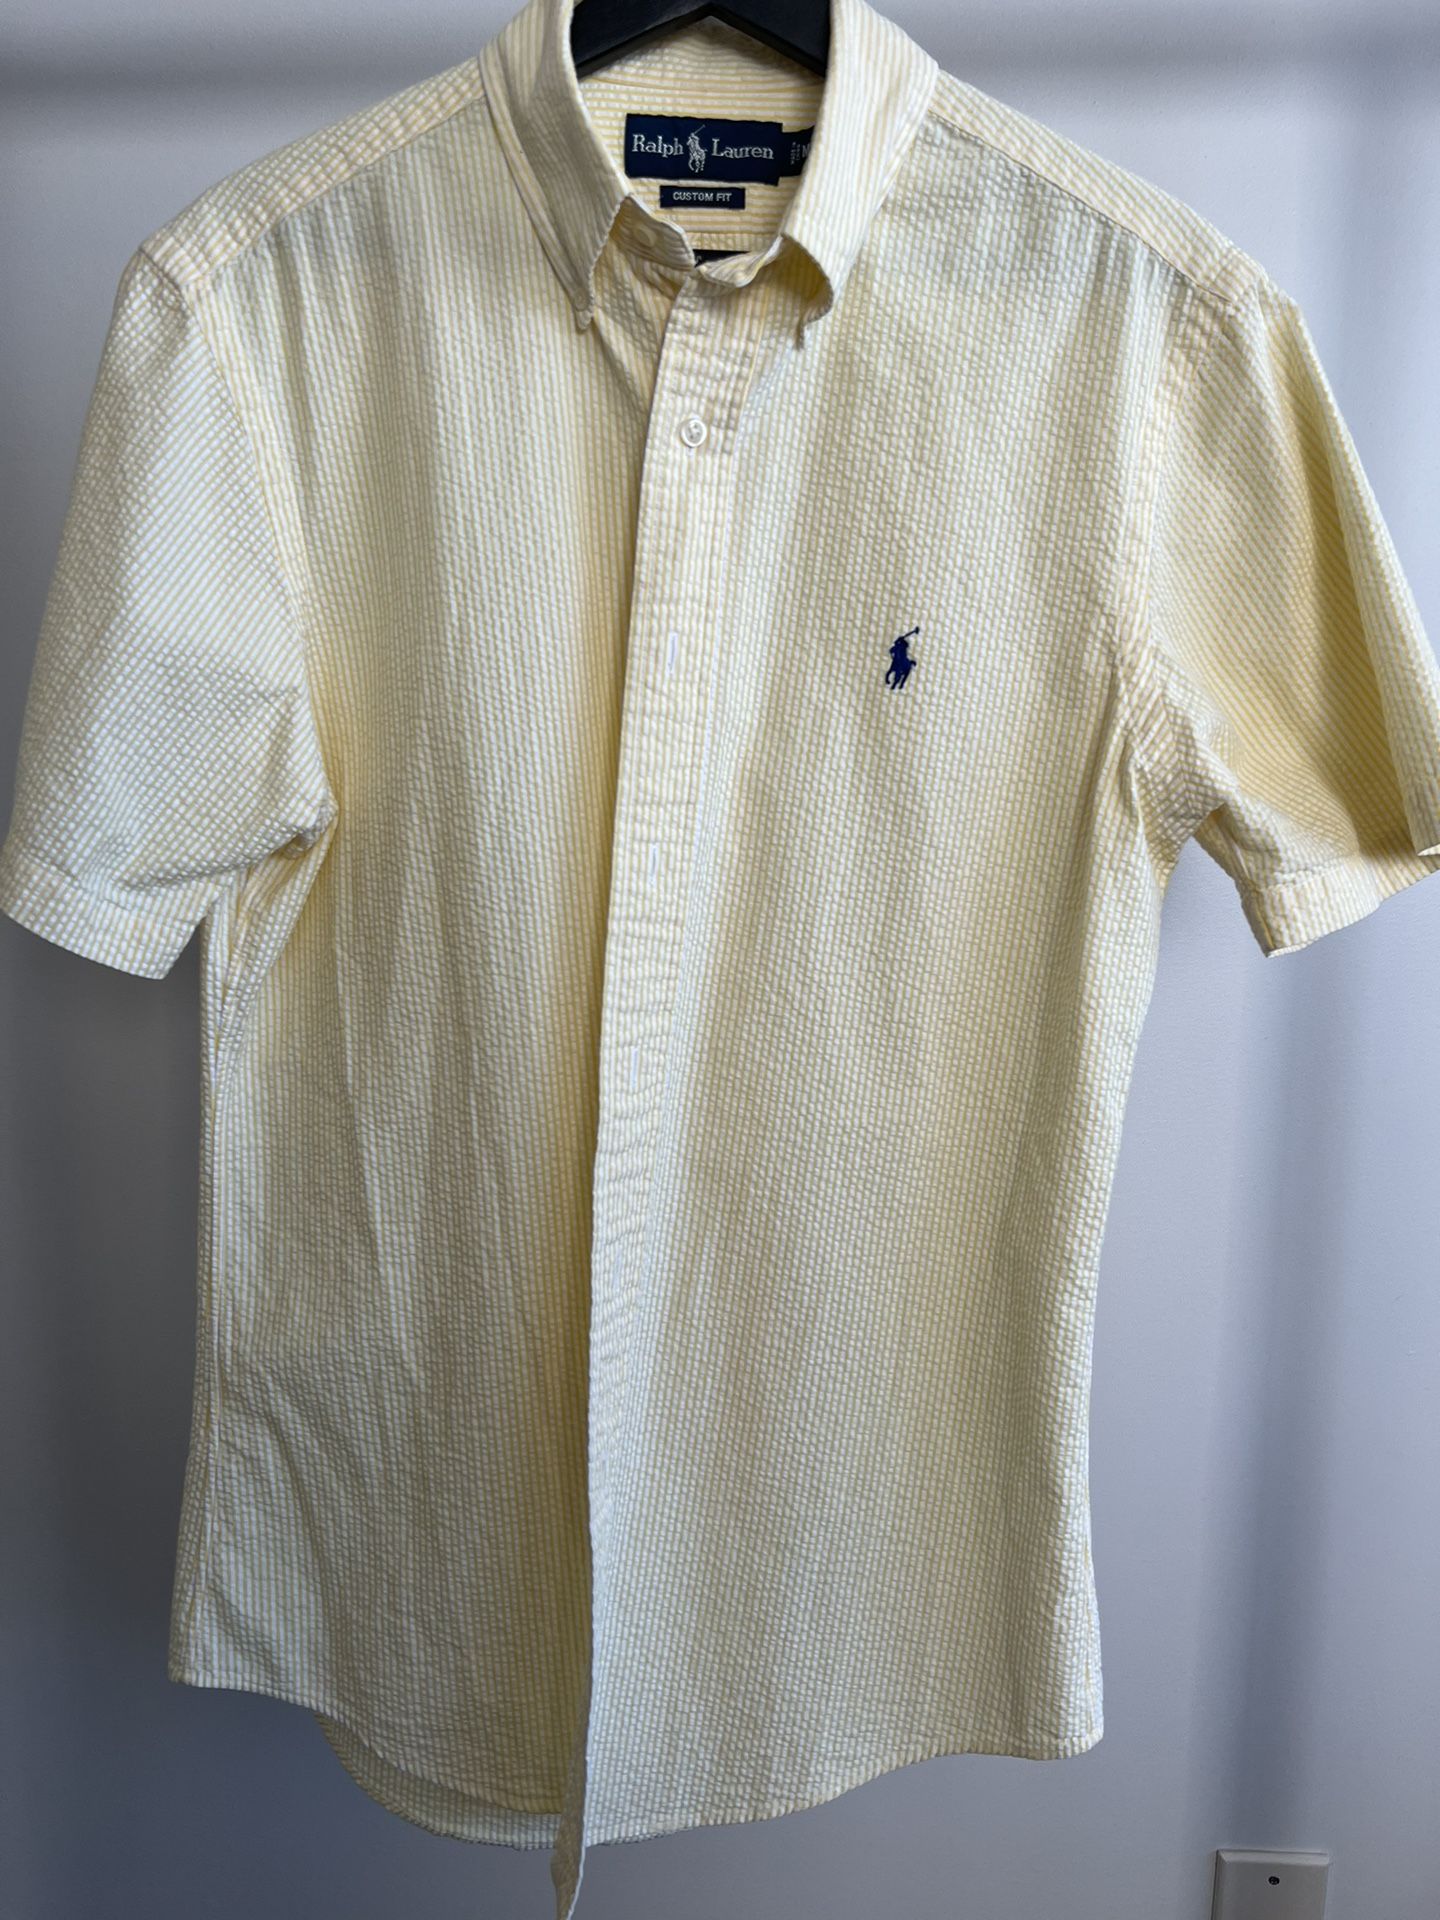 Polo Ralph Lauren Yellow Seersucker Shirt